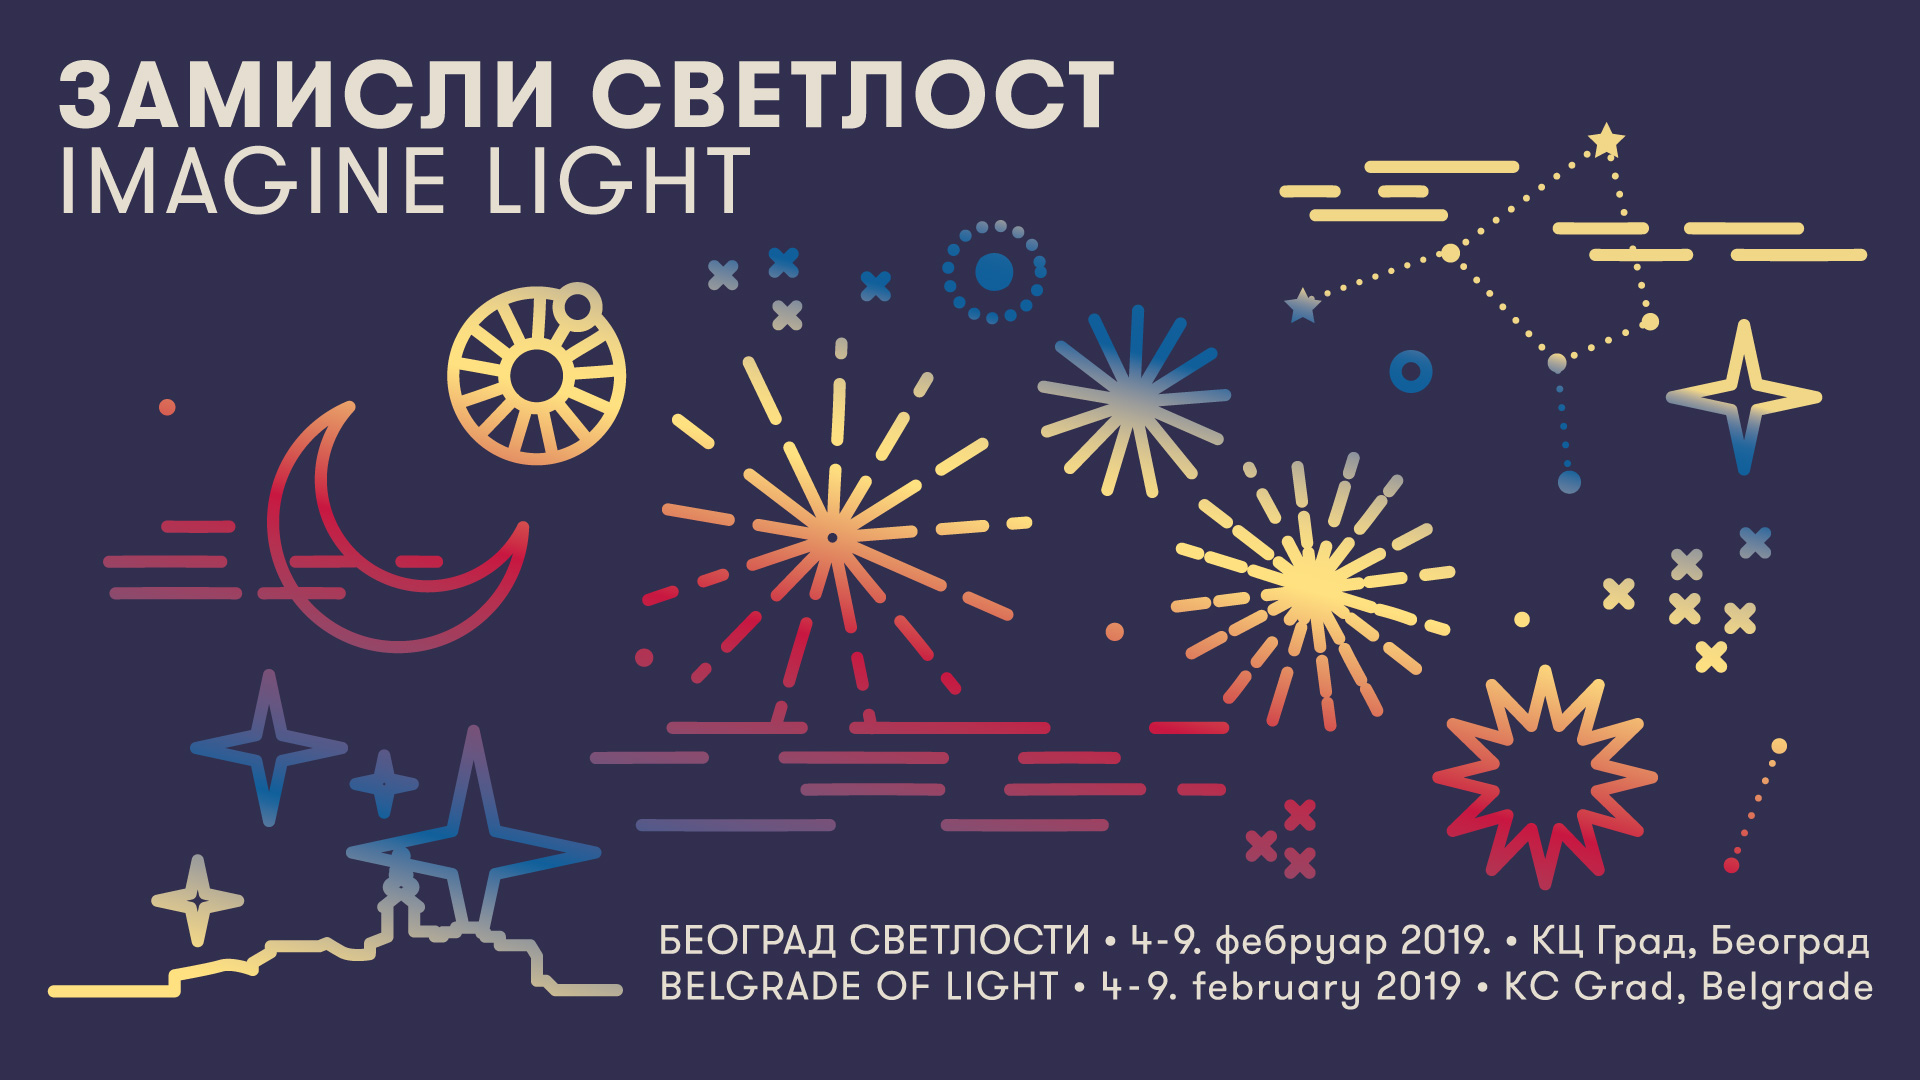 Beograd svetlosti 2019 - Zamisli svetlost - visual by Monika Lang